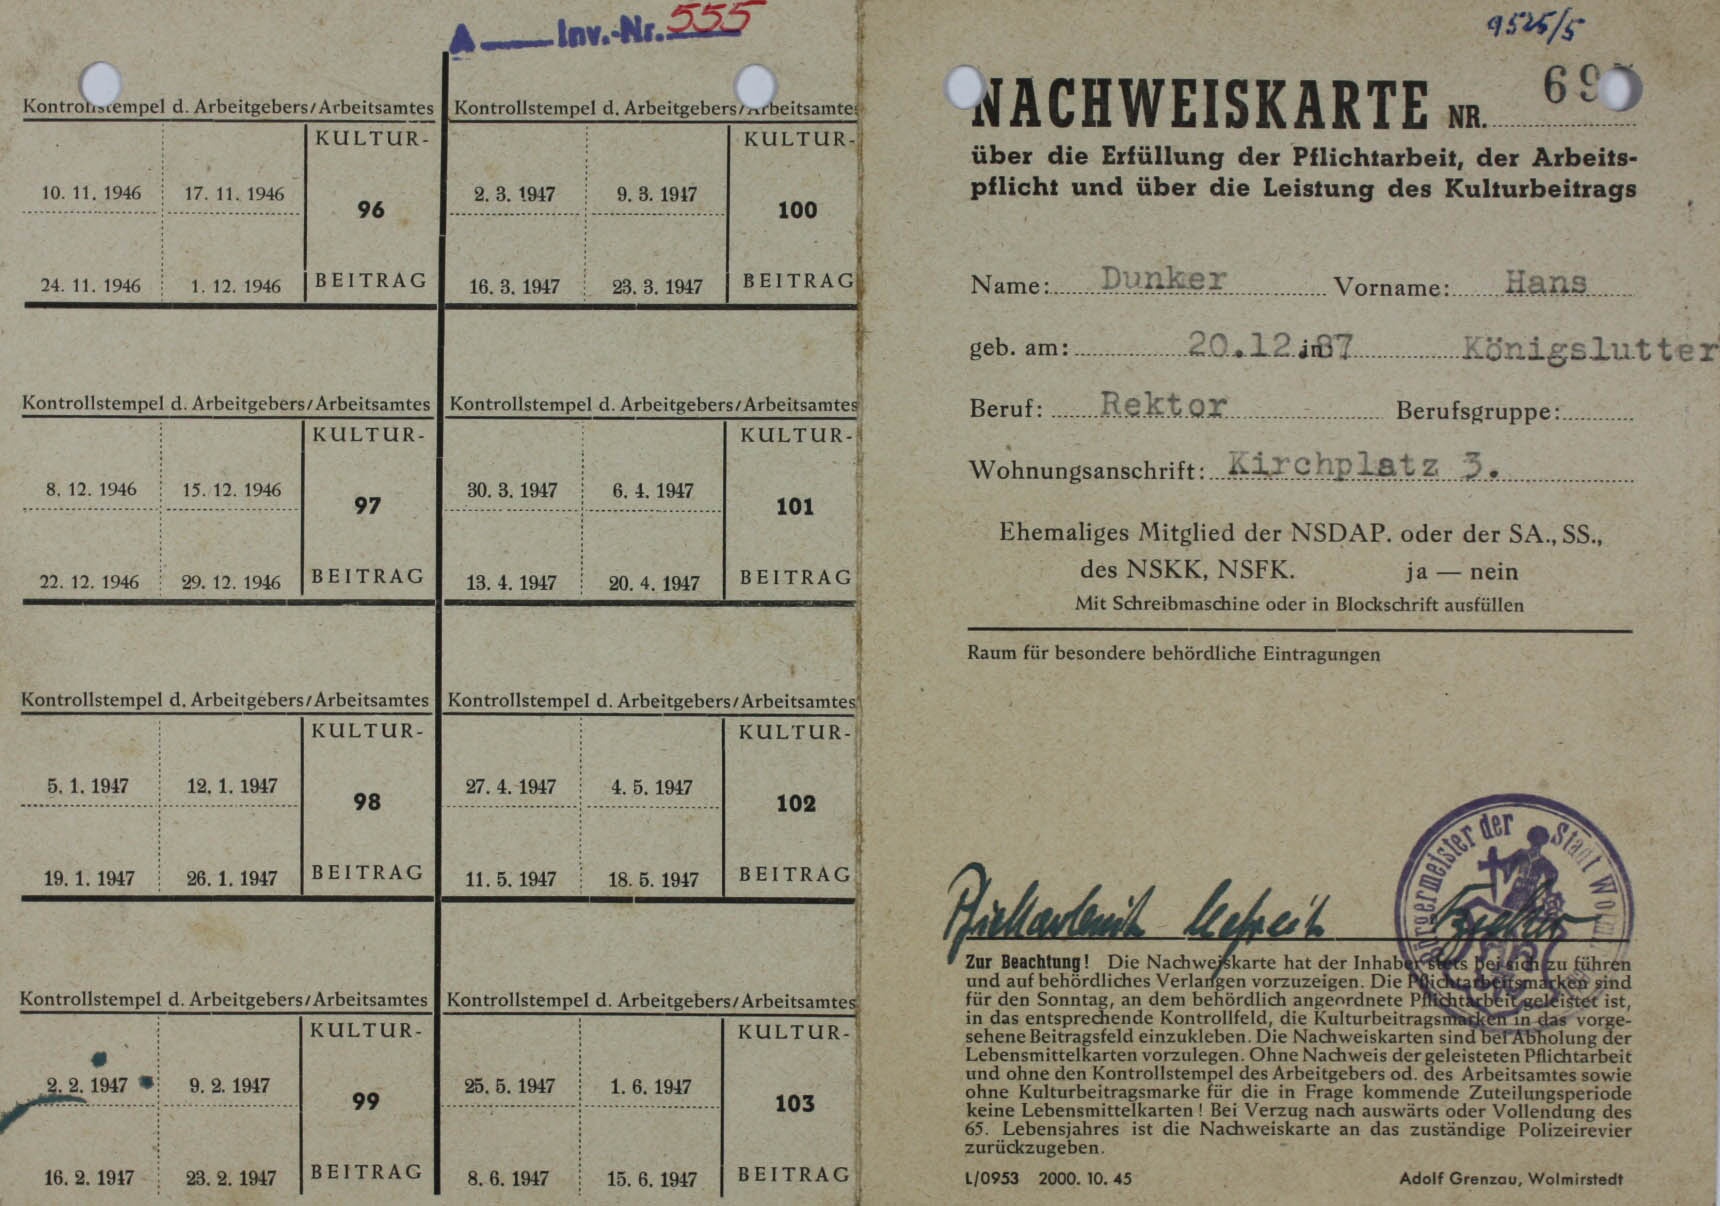 Nachweiskarte, für Hans Dunker, 1945 (Museum Wolmirstedt RR-F)